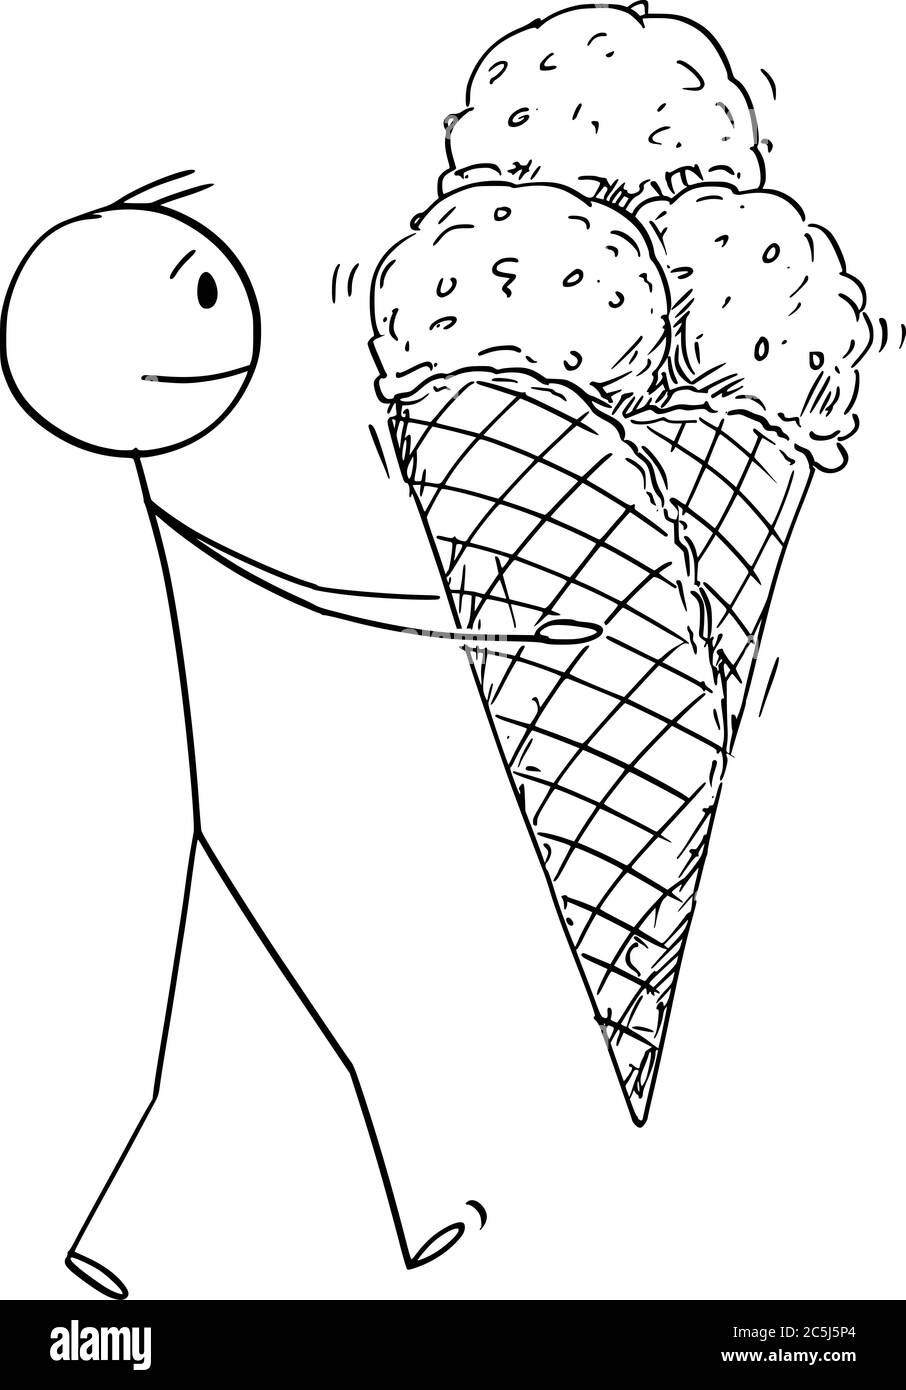 Disegno grafico vettoriale del cartoon illustrazione concettuale dell'uomo che tiene il gelato grande nel cono del waffle. Dessert estivo freddo. Illustrazione Vettoriale